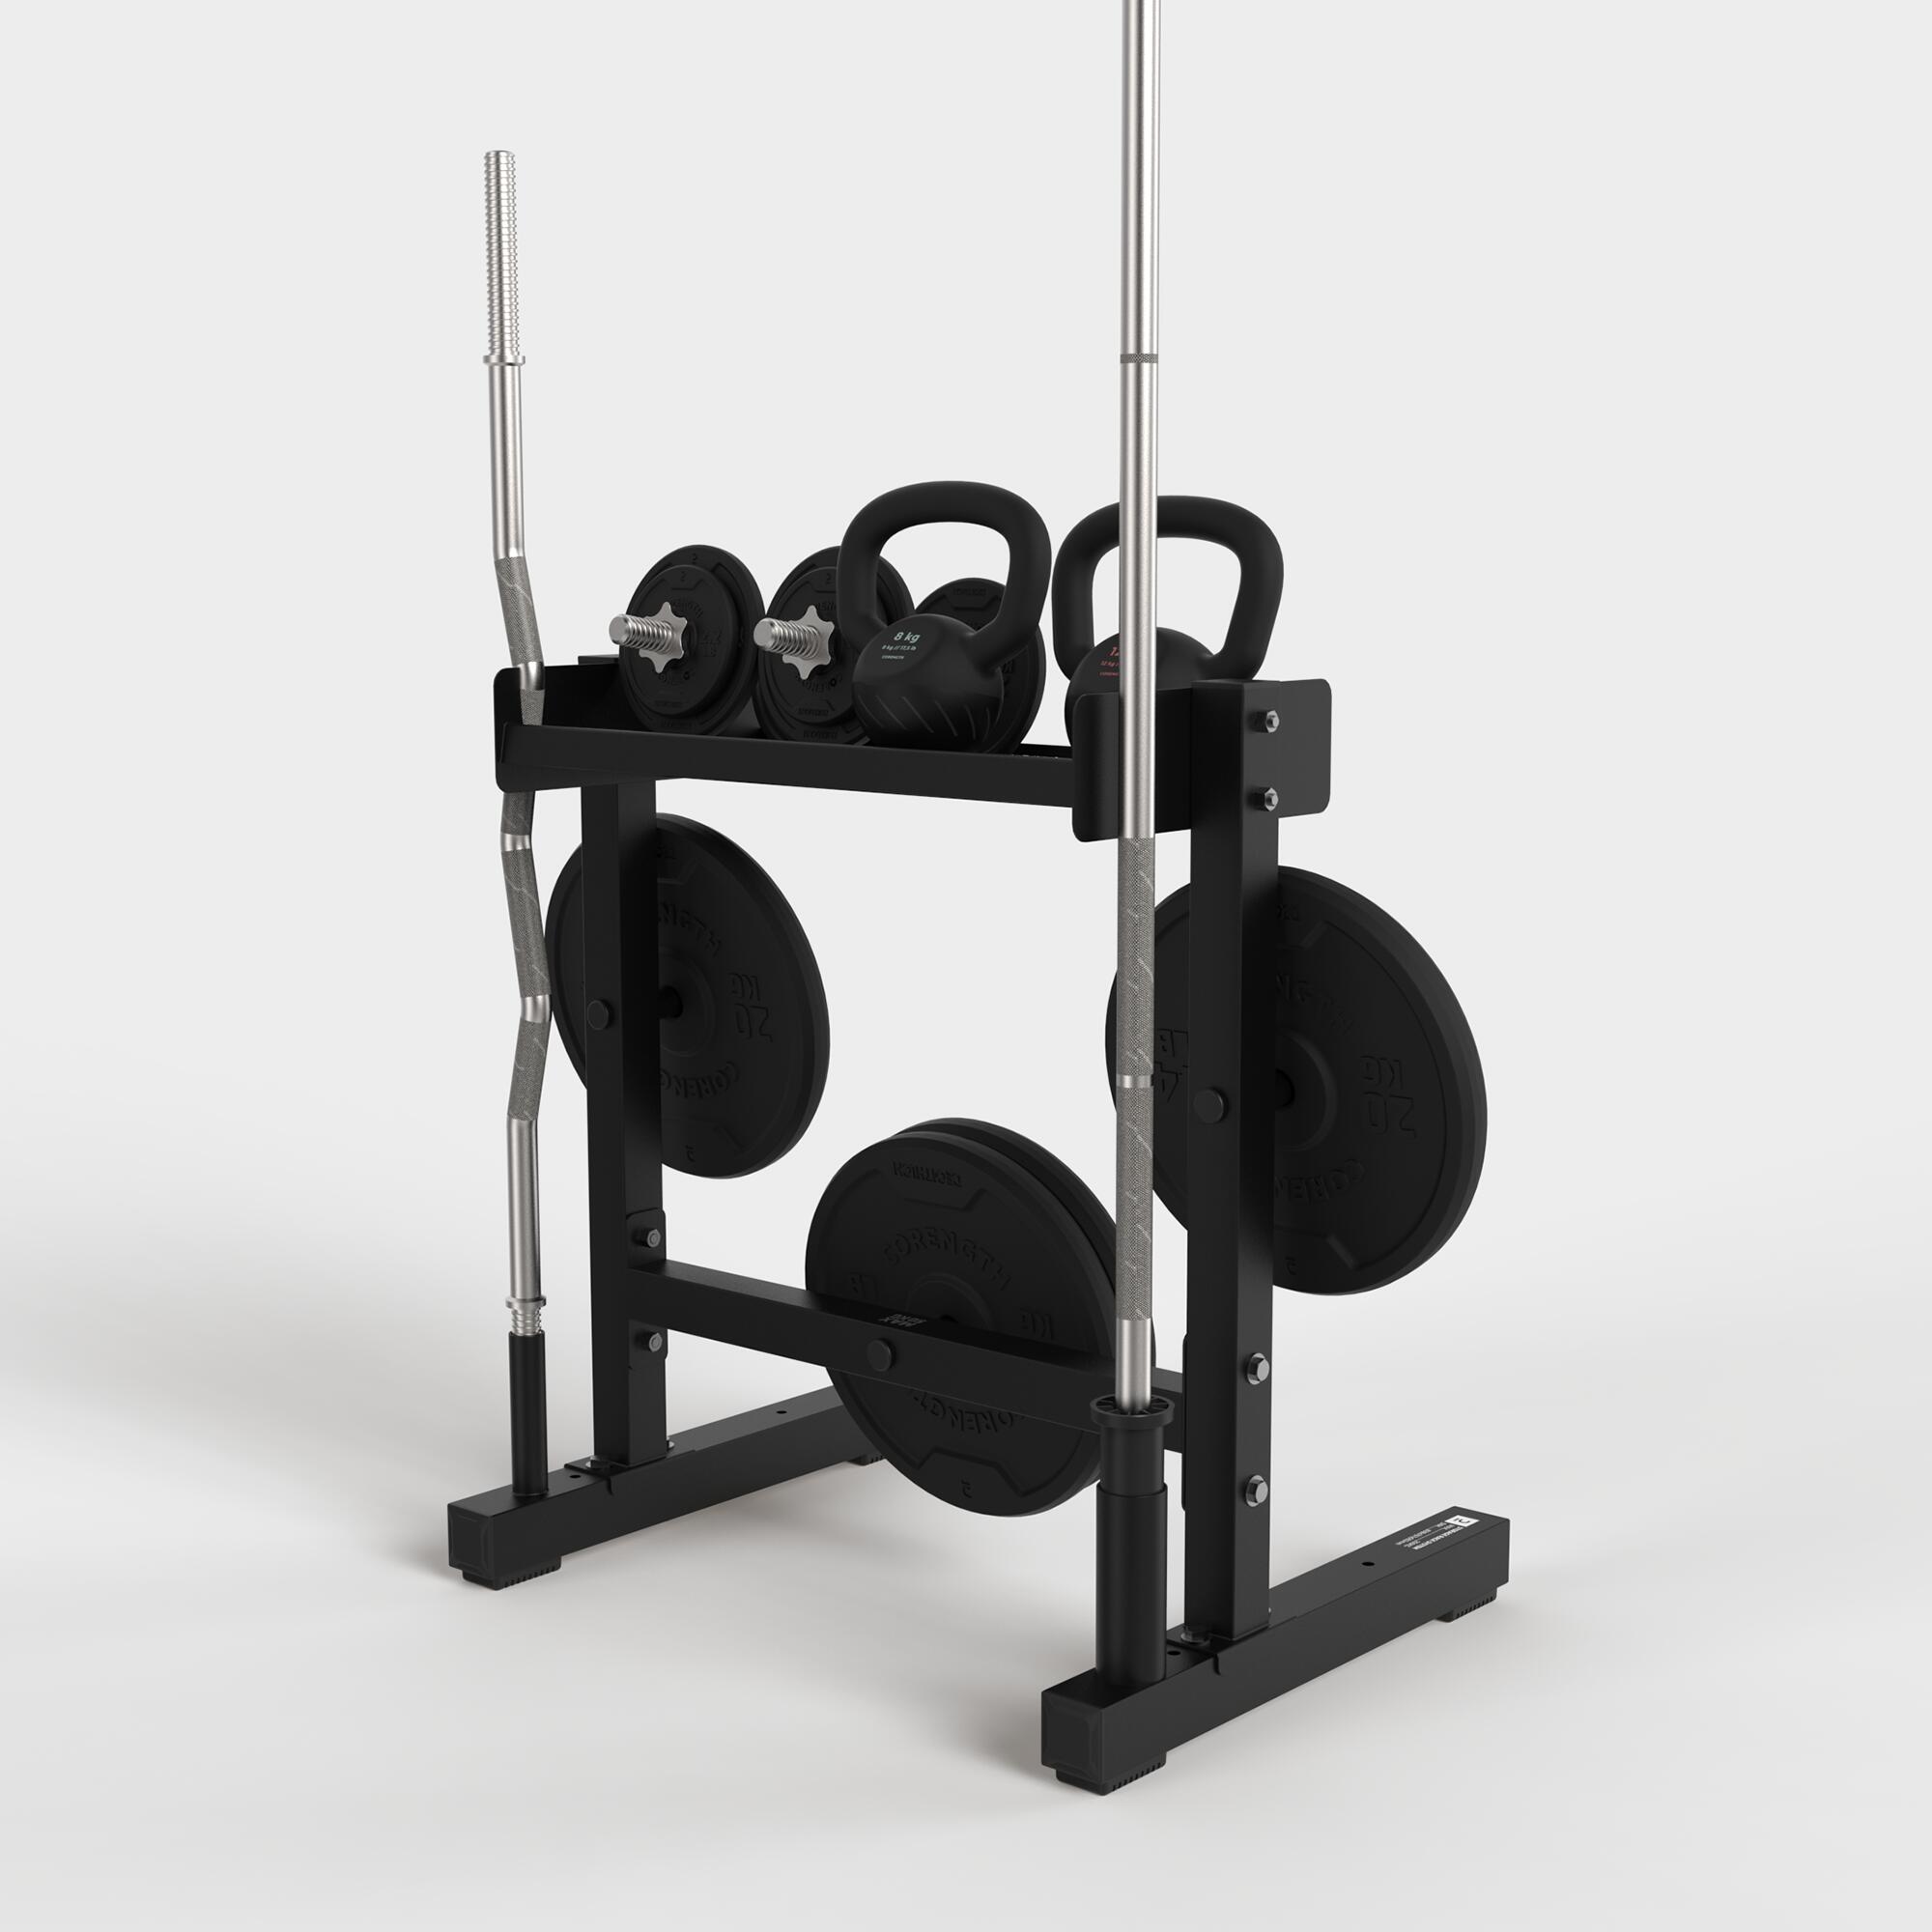 Support de rangement pour poids ajustables Nü – Body Gym équipements